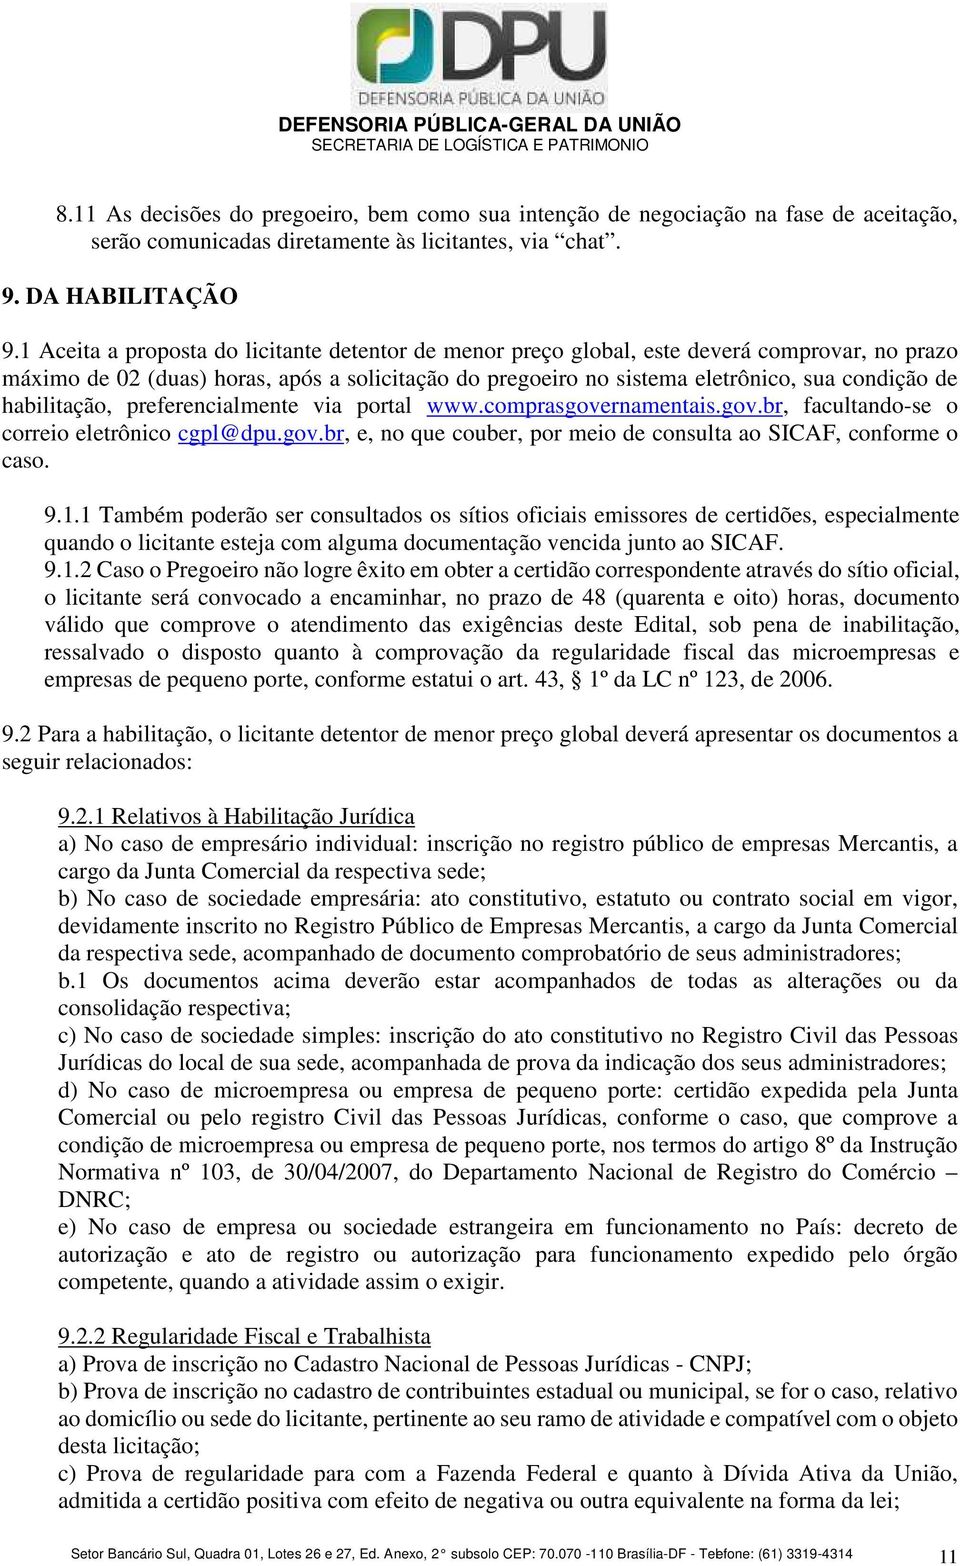 habilitação, preferencialmente via portal www.comprasgovernamentais.gov.br, facultando-se o correio eletrônico cgpl@dpu.gov.br, e, no que couber, por meio de consulta ao SICAF, conforme o caso. 9.1.